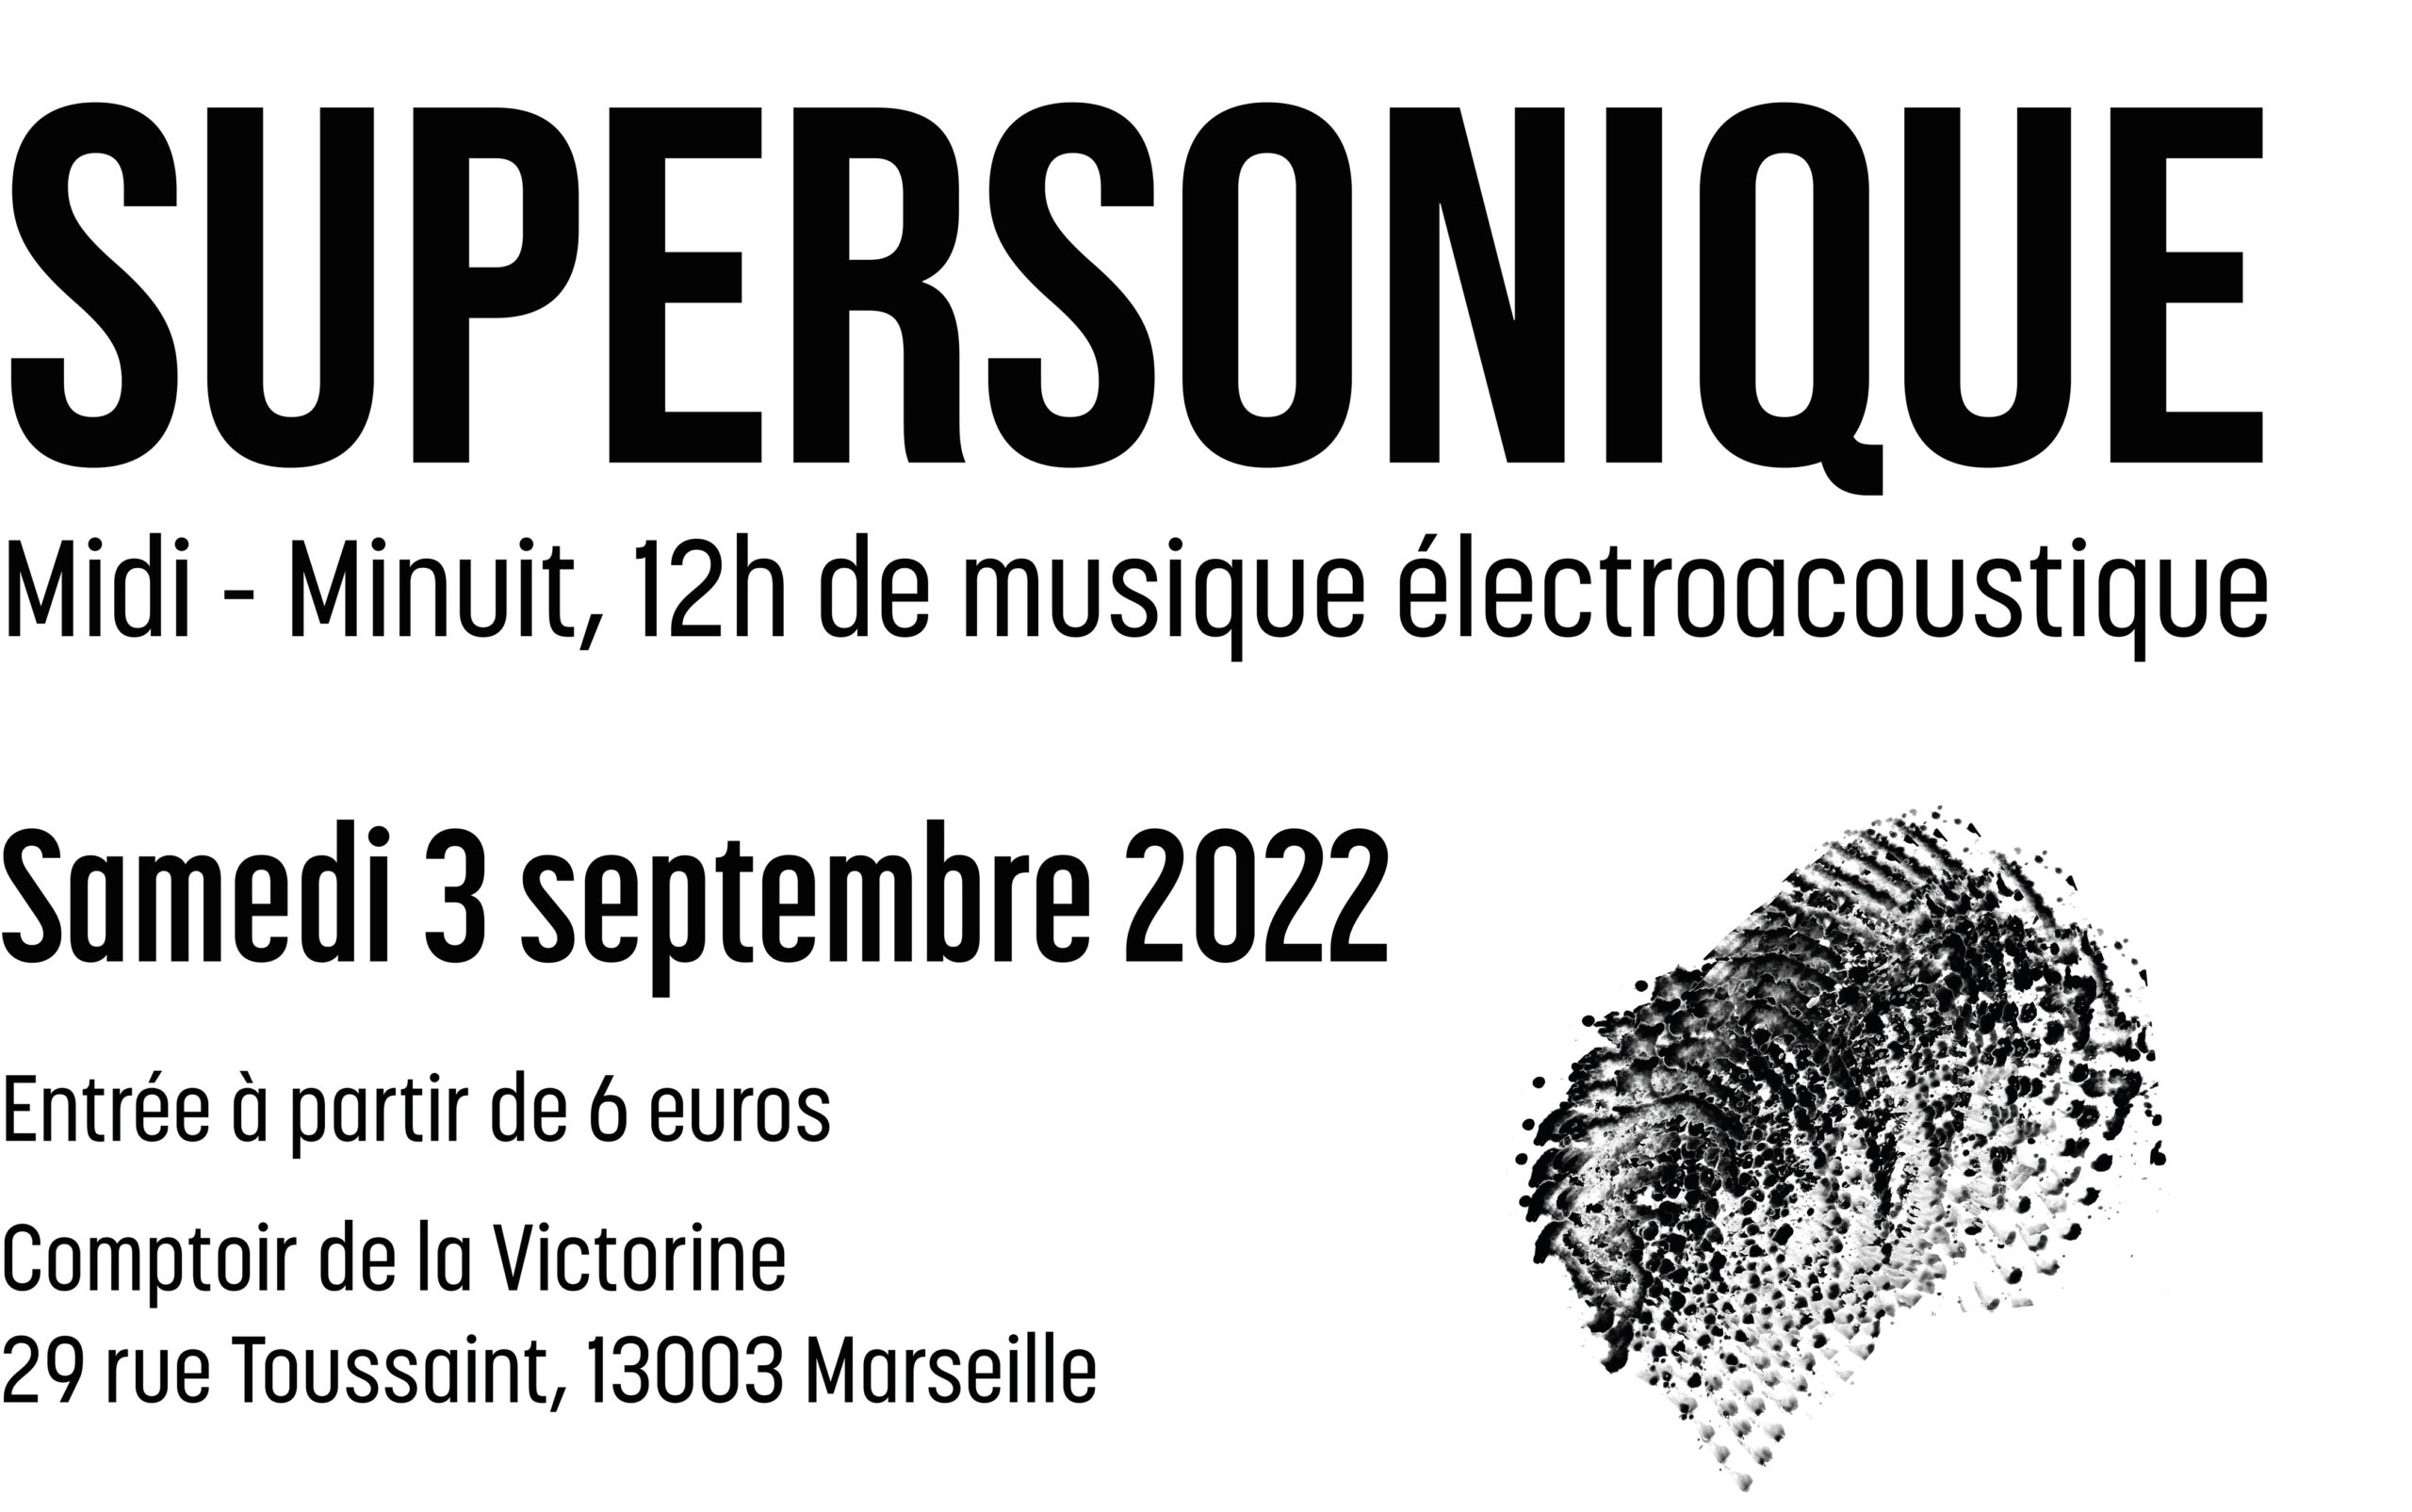 SUPERSONIQUE Midi &#8211; Minuit, 12h de musique életroacoustique